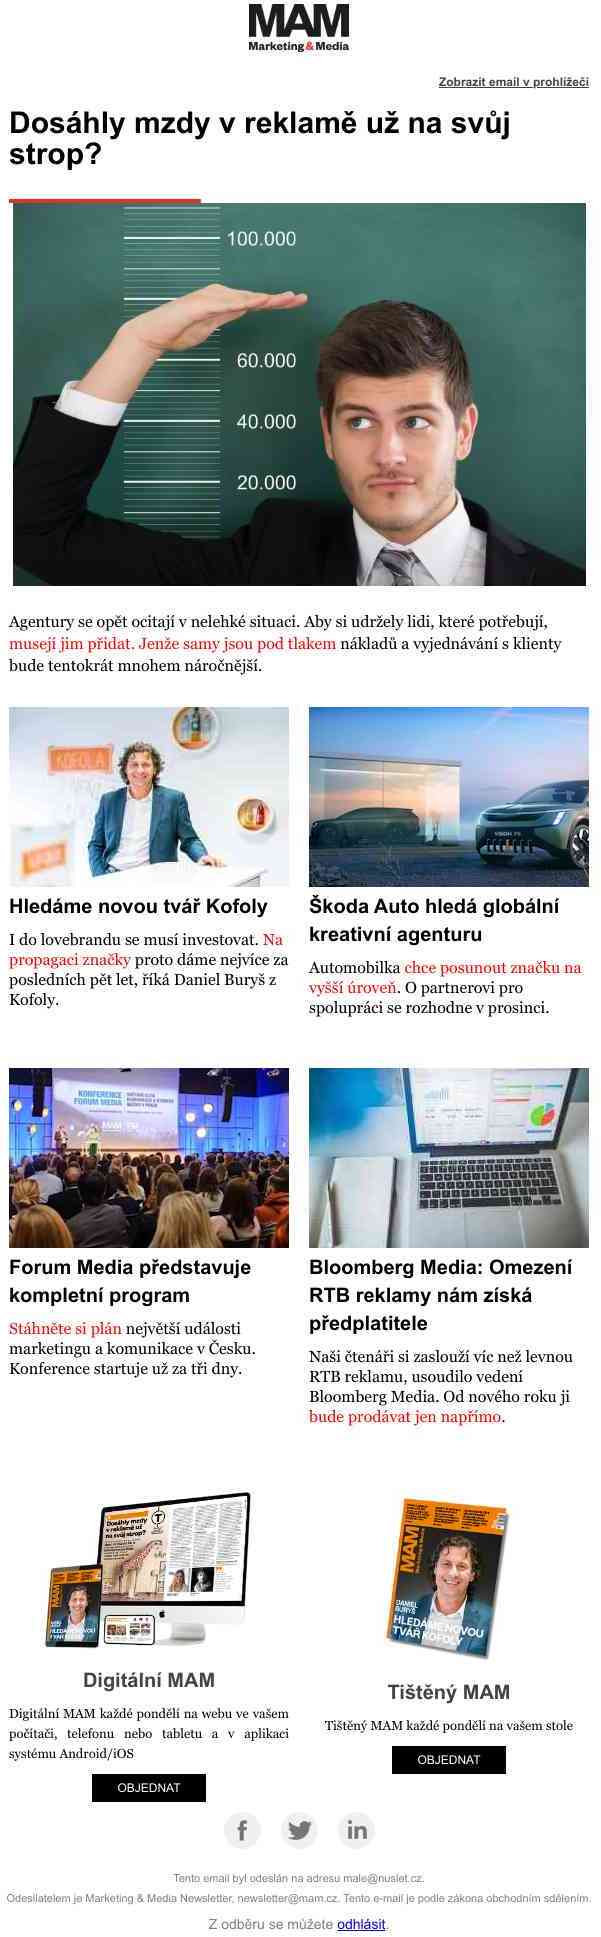 Kreativci chtějí dorovnat inflaci, agentury váhají – Kofola hledá novou tvář – Škoda Auto vybírá kreativní agenturu